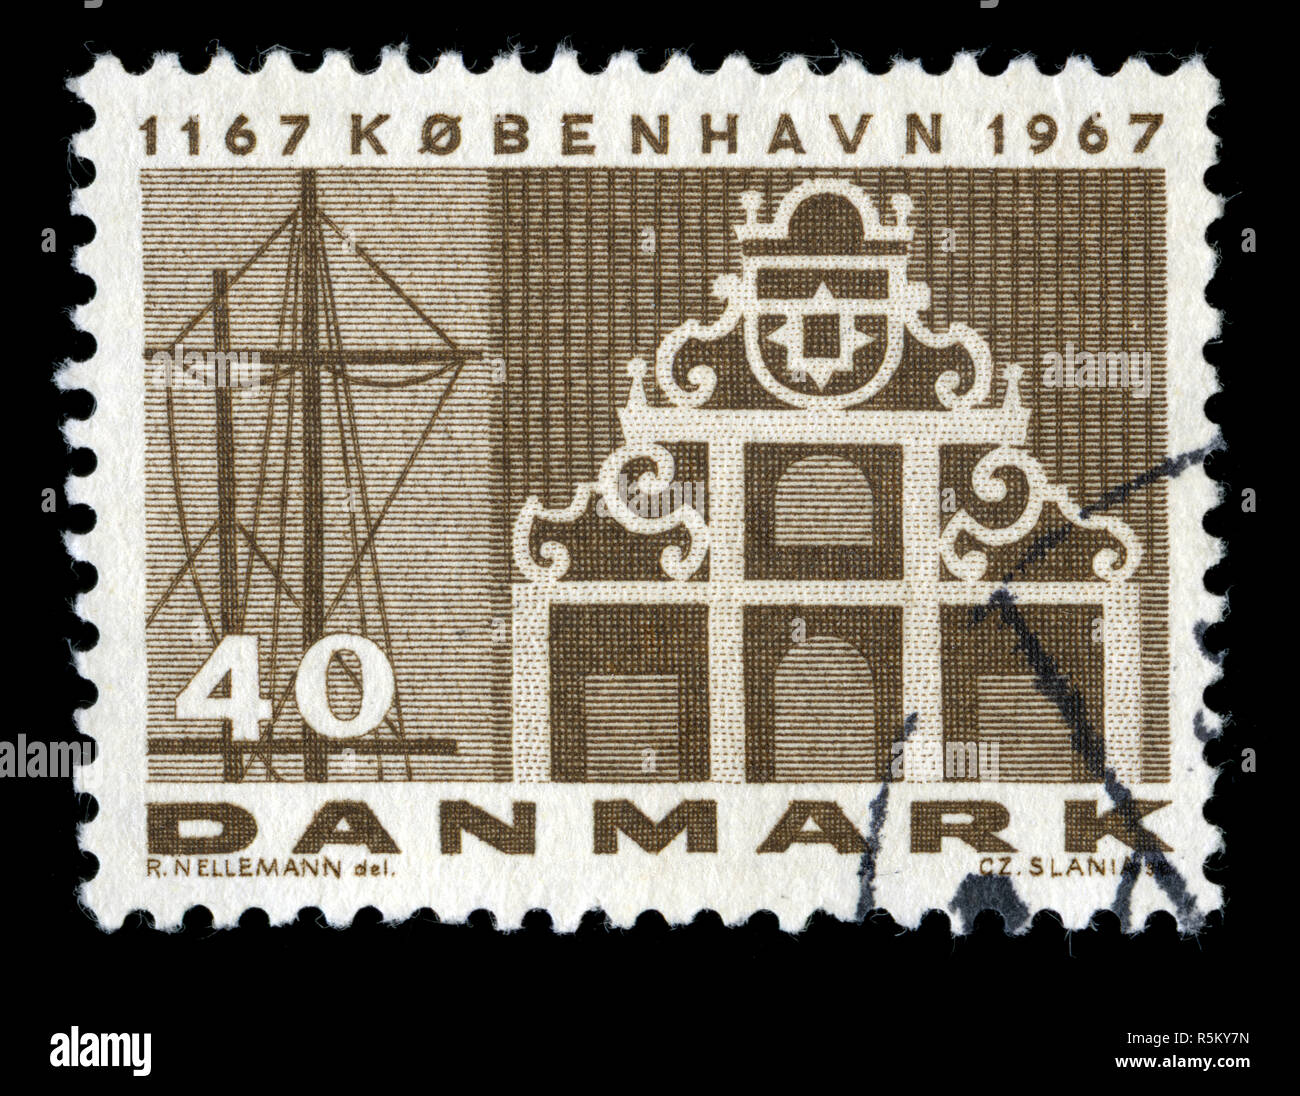 Timbre-poste du Danemark à Copenhague le viewsseries publié en 1967 Banque D'Images